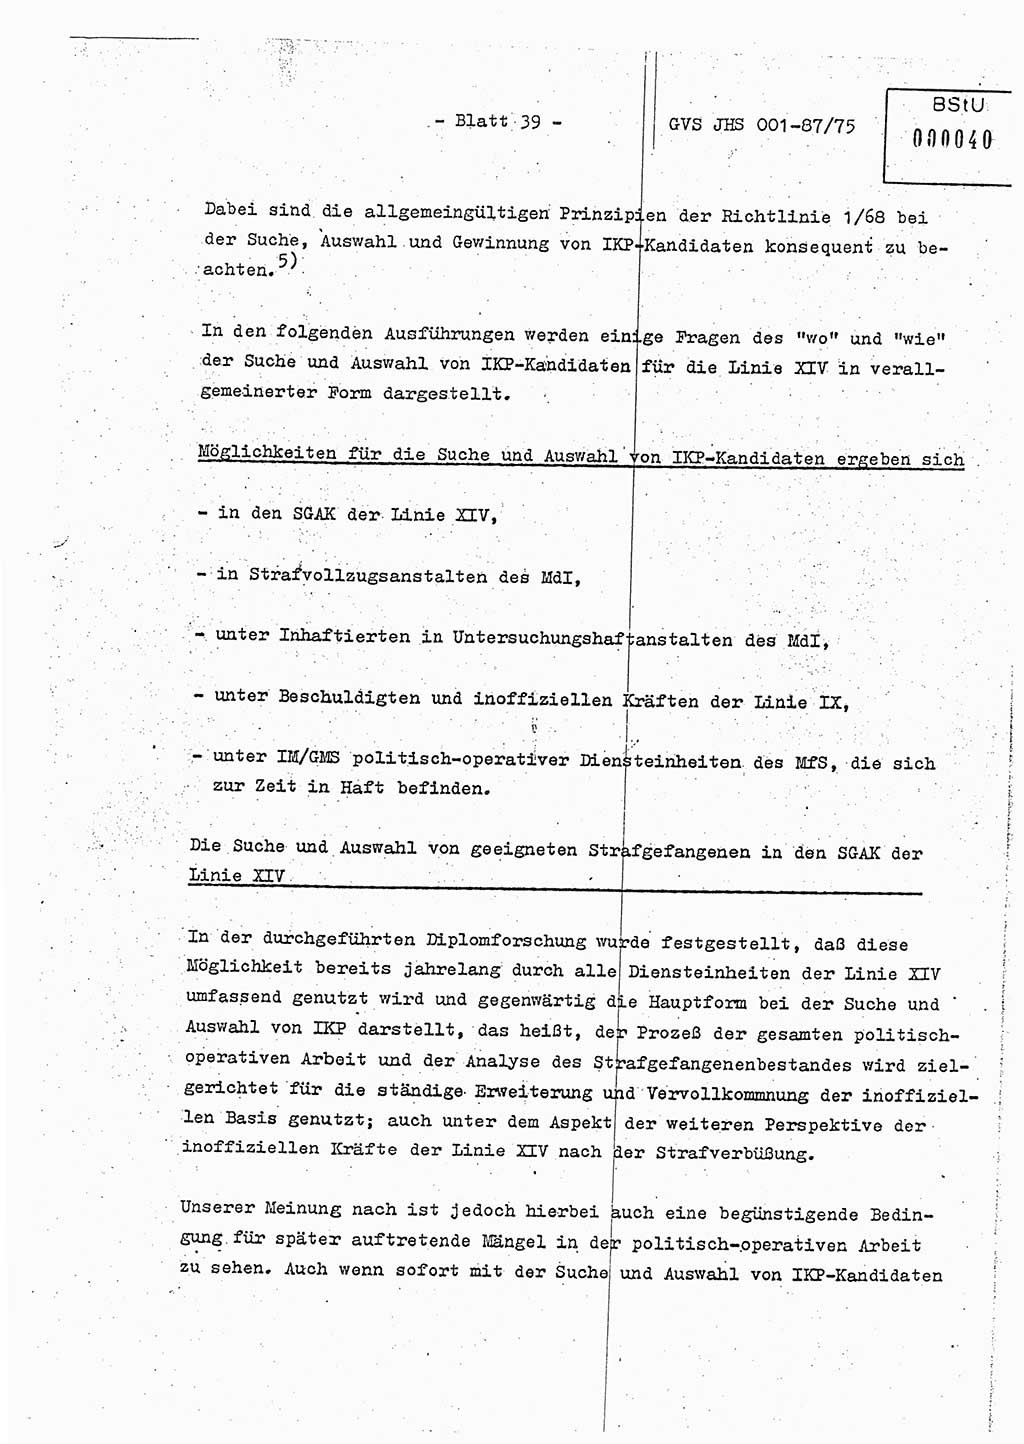 Diplomarbeit Hauptmann Volkmar Heinz (Abt. ⅩⅣ), Oberleutnant Lothar Rüdiger (BV Lpz. Abt. Ⅺ), Ministerium für Staatssicherheit (MfS) [Deutsche Demokratische Republik (DDR)], Juristische Hochschule (JHS), Geheime Verschlußsache (GVS) o001-87/75, Potsdam 1975, Seite 39 (Dipl.-Arb. MfS DDR JHS GVS o001-87/75 1975, S. 39)